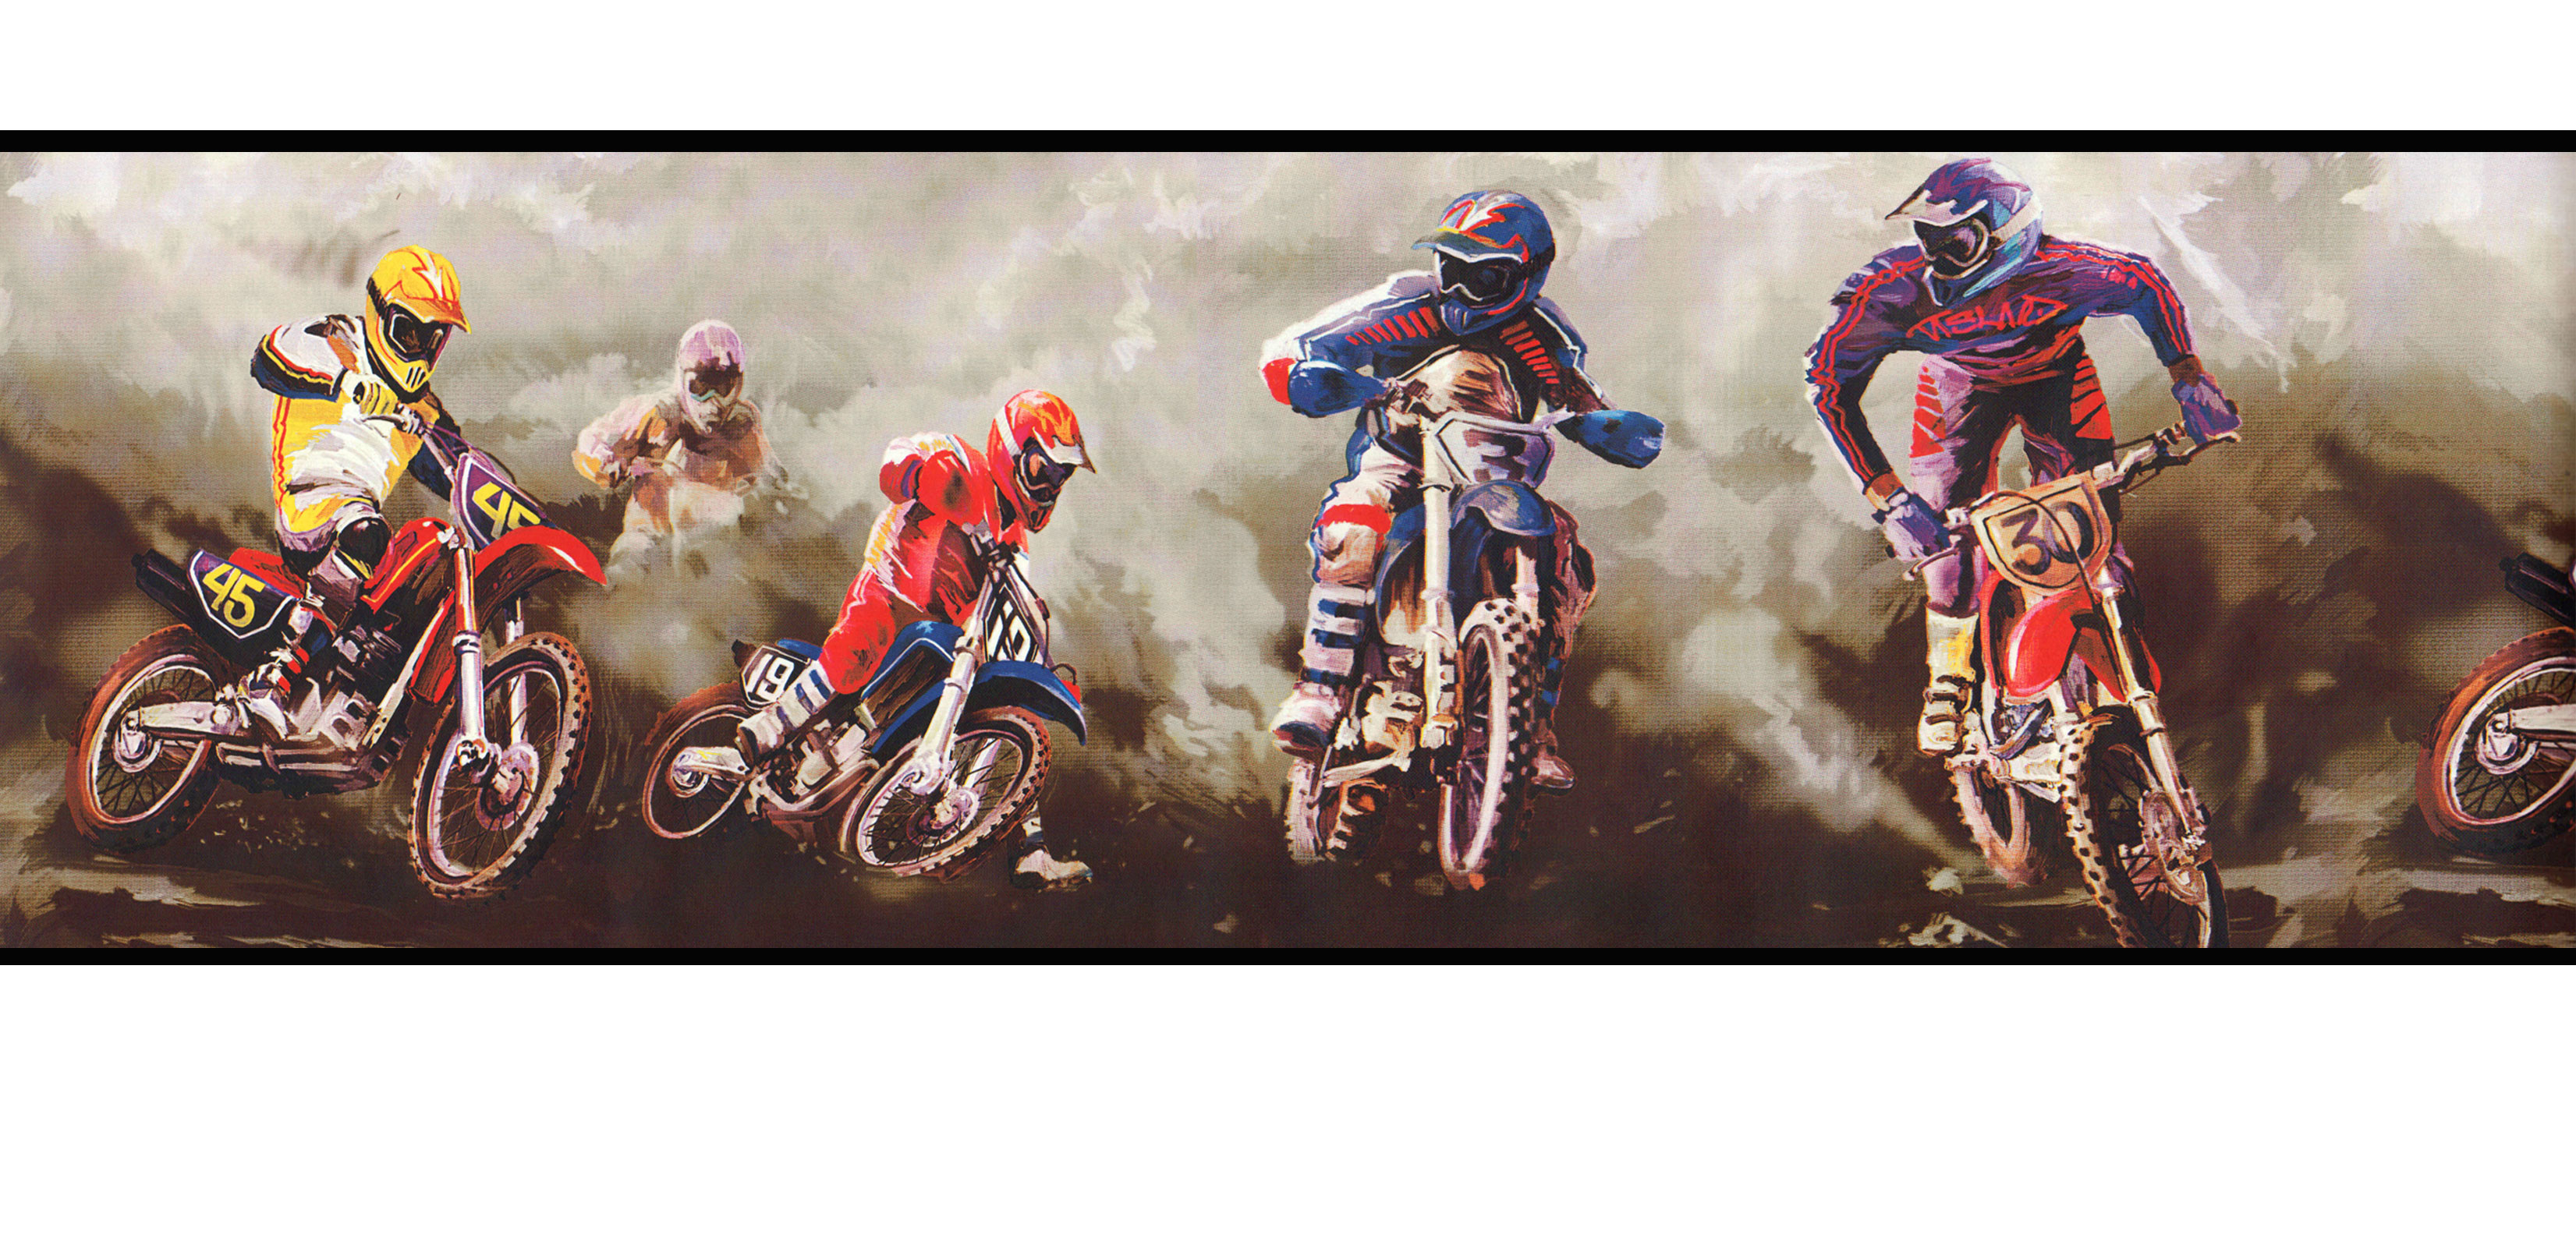 Motocross Dirt Bikes Wallpaper Border 13c2 Sp909508 Image